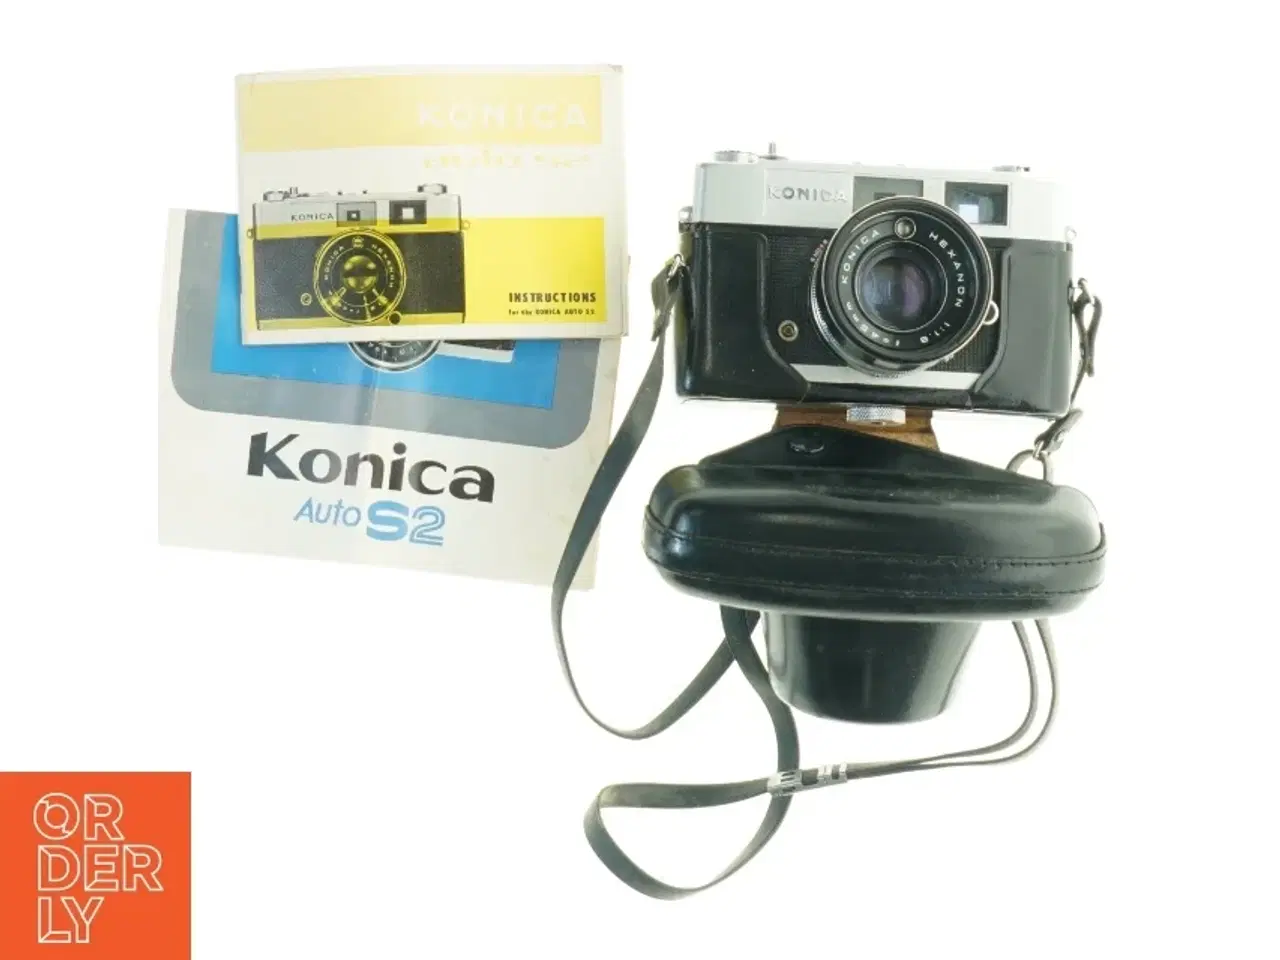 Billede 1 - Konica Auto S2 kamera med etui og manual fra Konica (str. 17 x 14 cm)